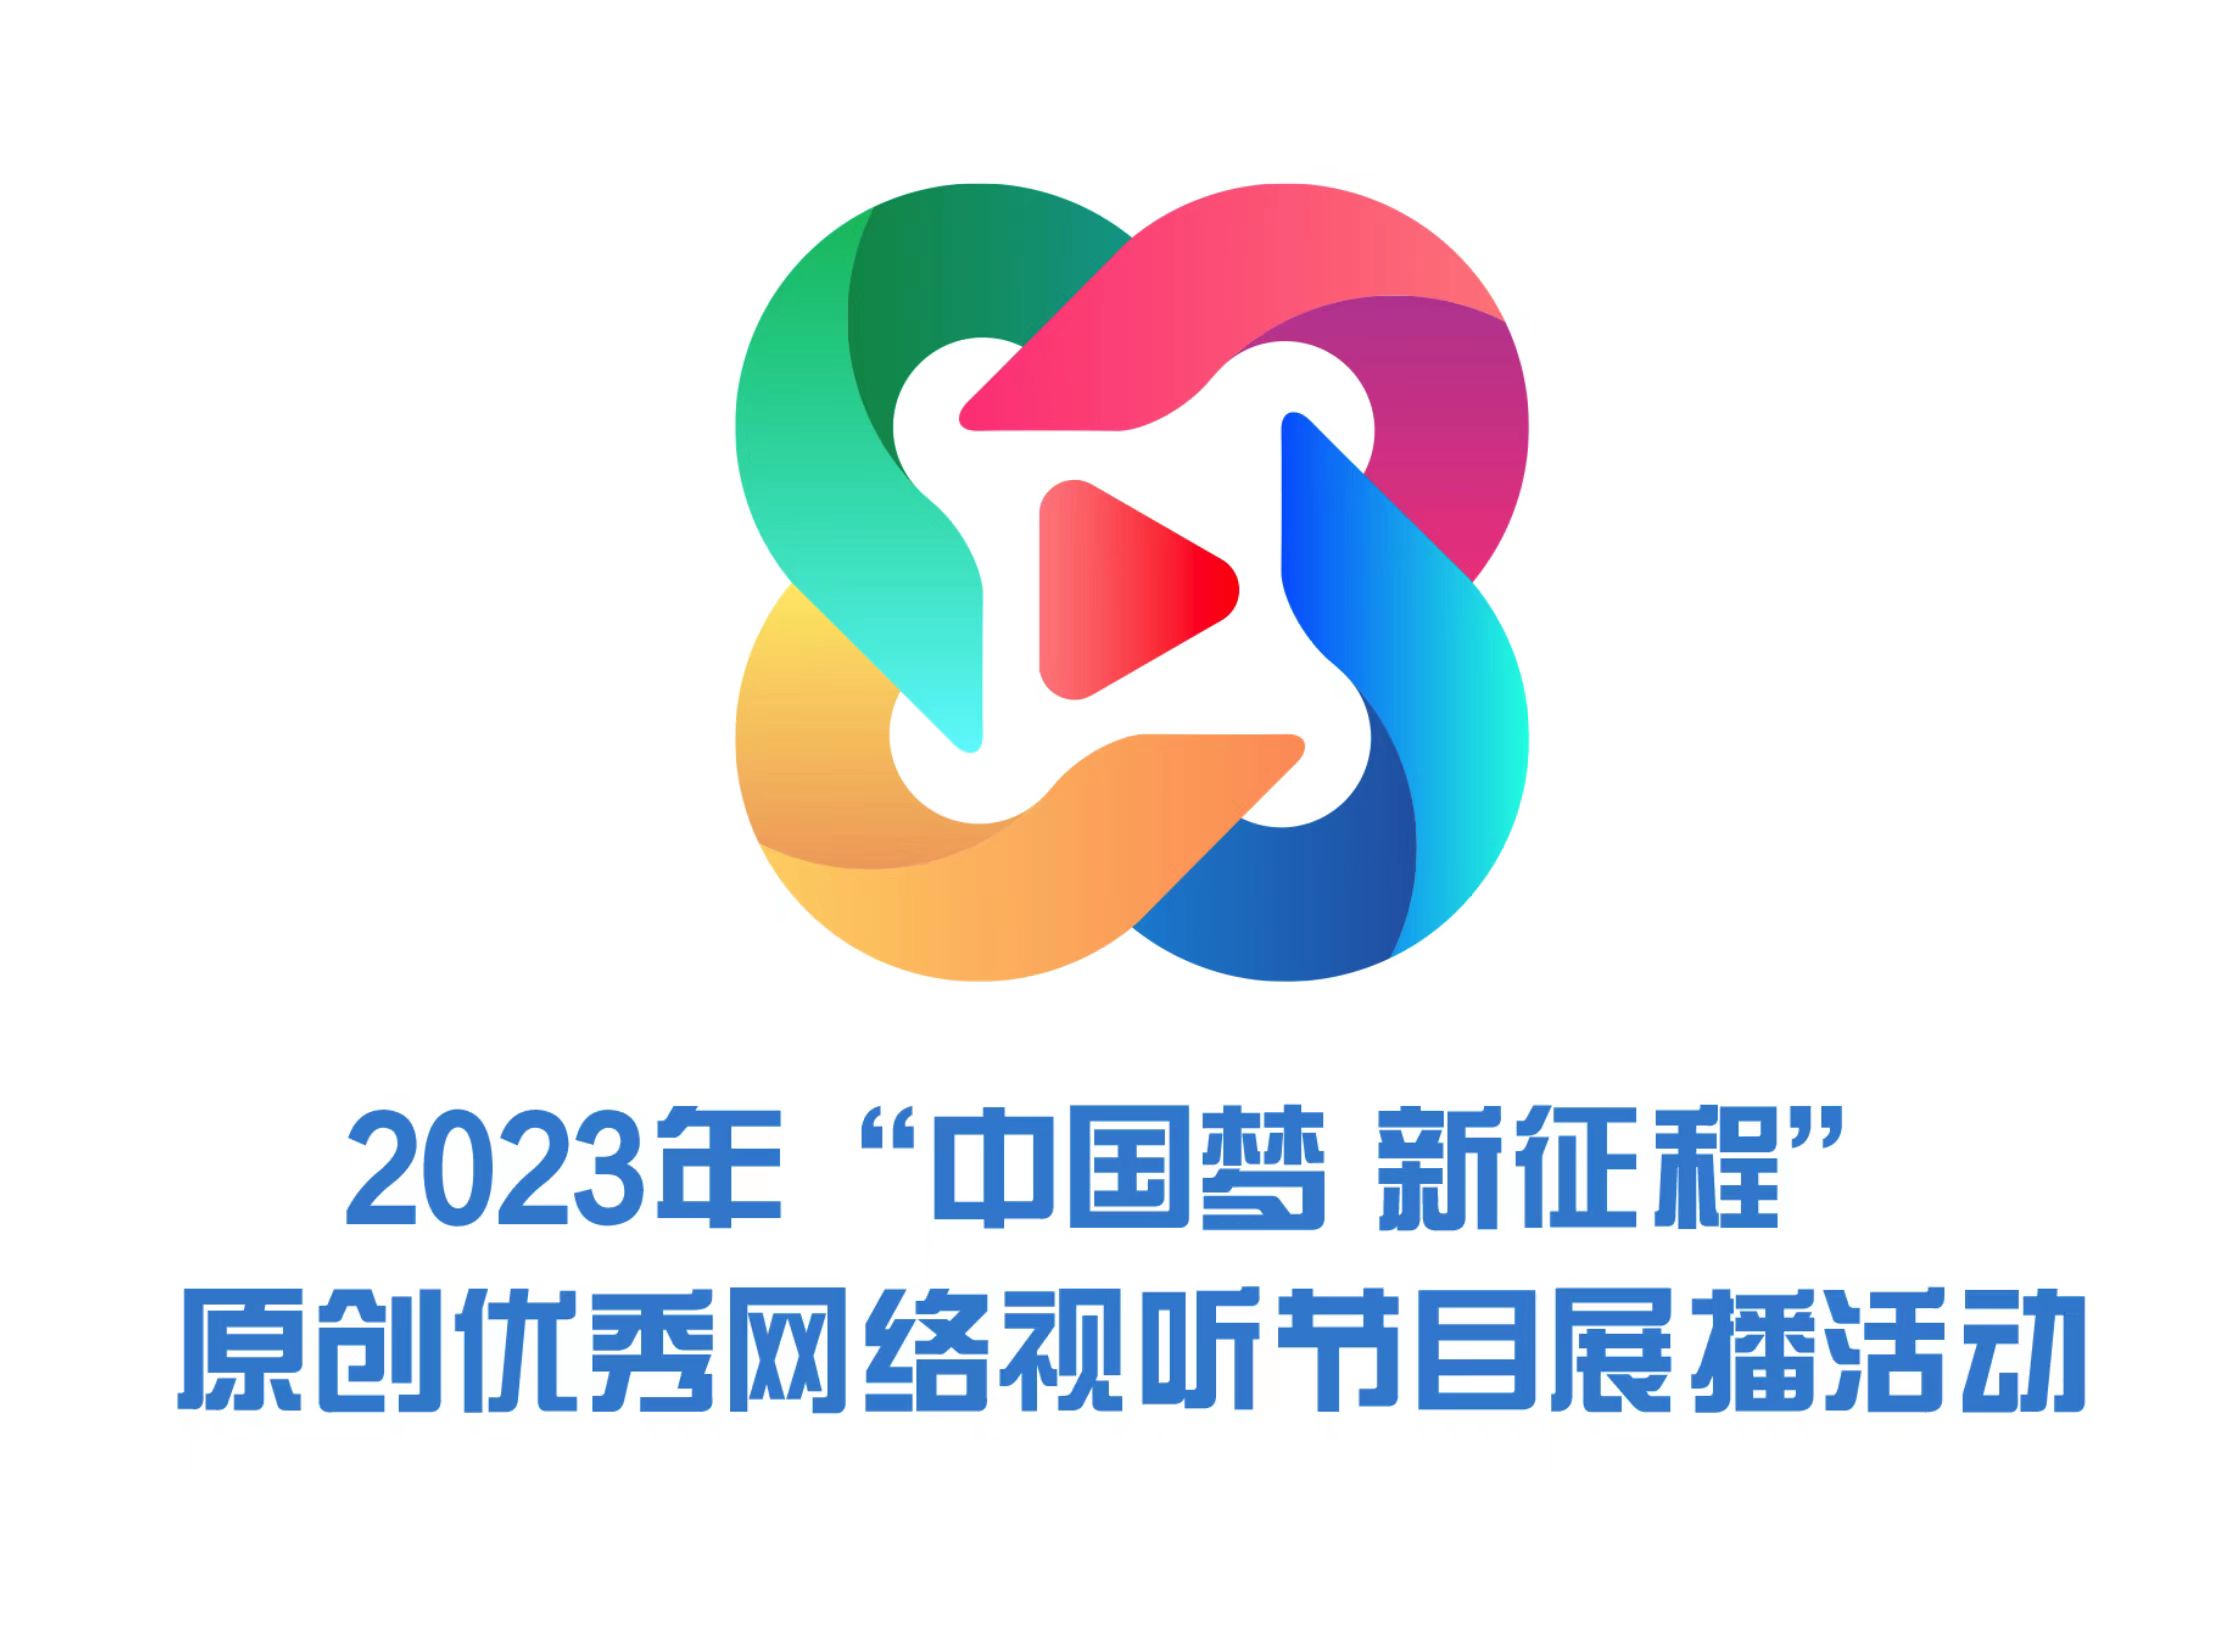 2023年“中國夢 新征程”原創優秀網絡視聽節目展播活動